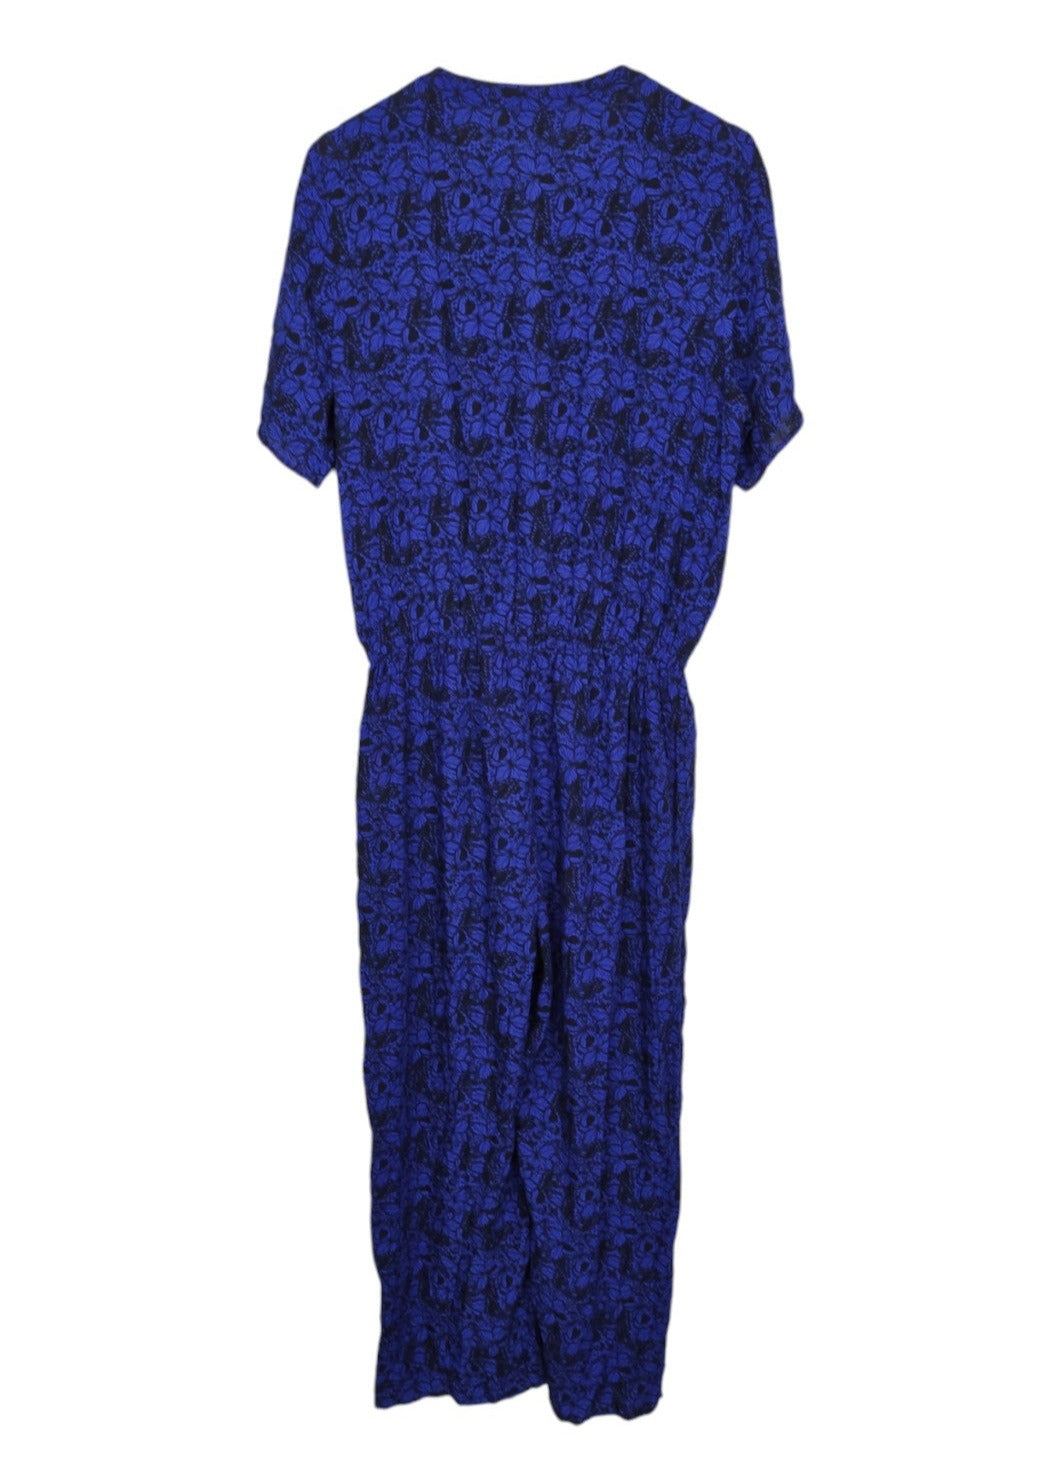 Ολόσωμη, Γυναικεία Φόρμα από Βισκόζη COTTON TRADERS σε Μπλε-Μαύρο Χρώμα (M/L)